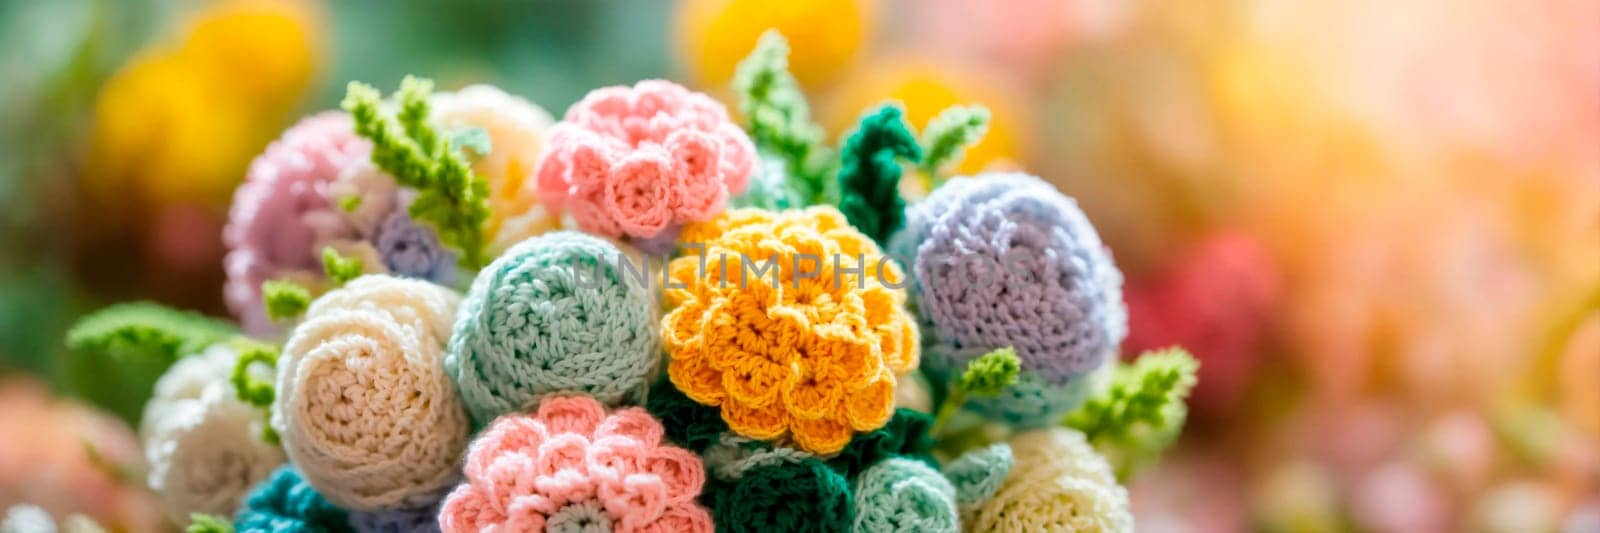 Crochet bouquet of flowers. Selective focus. color.